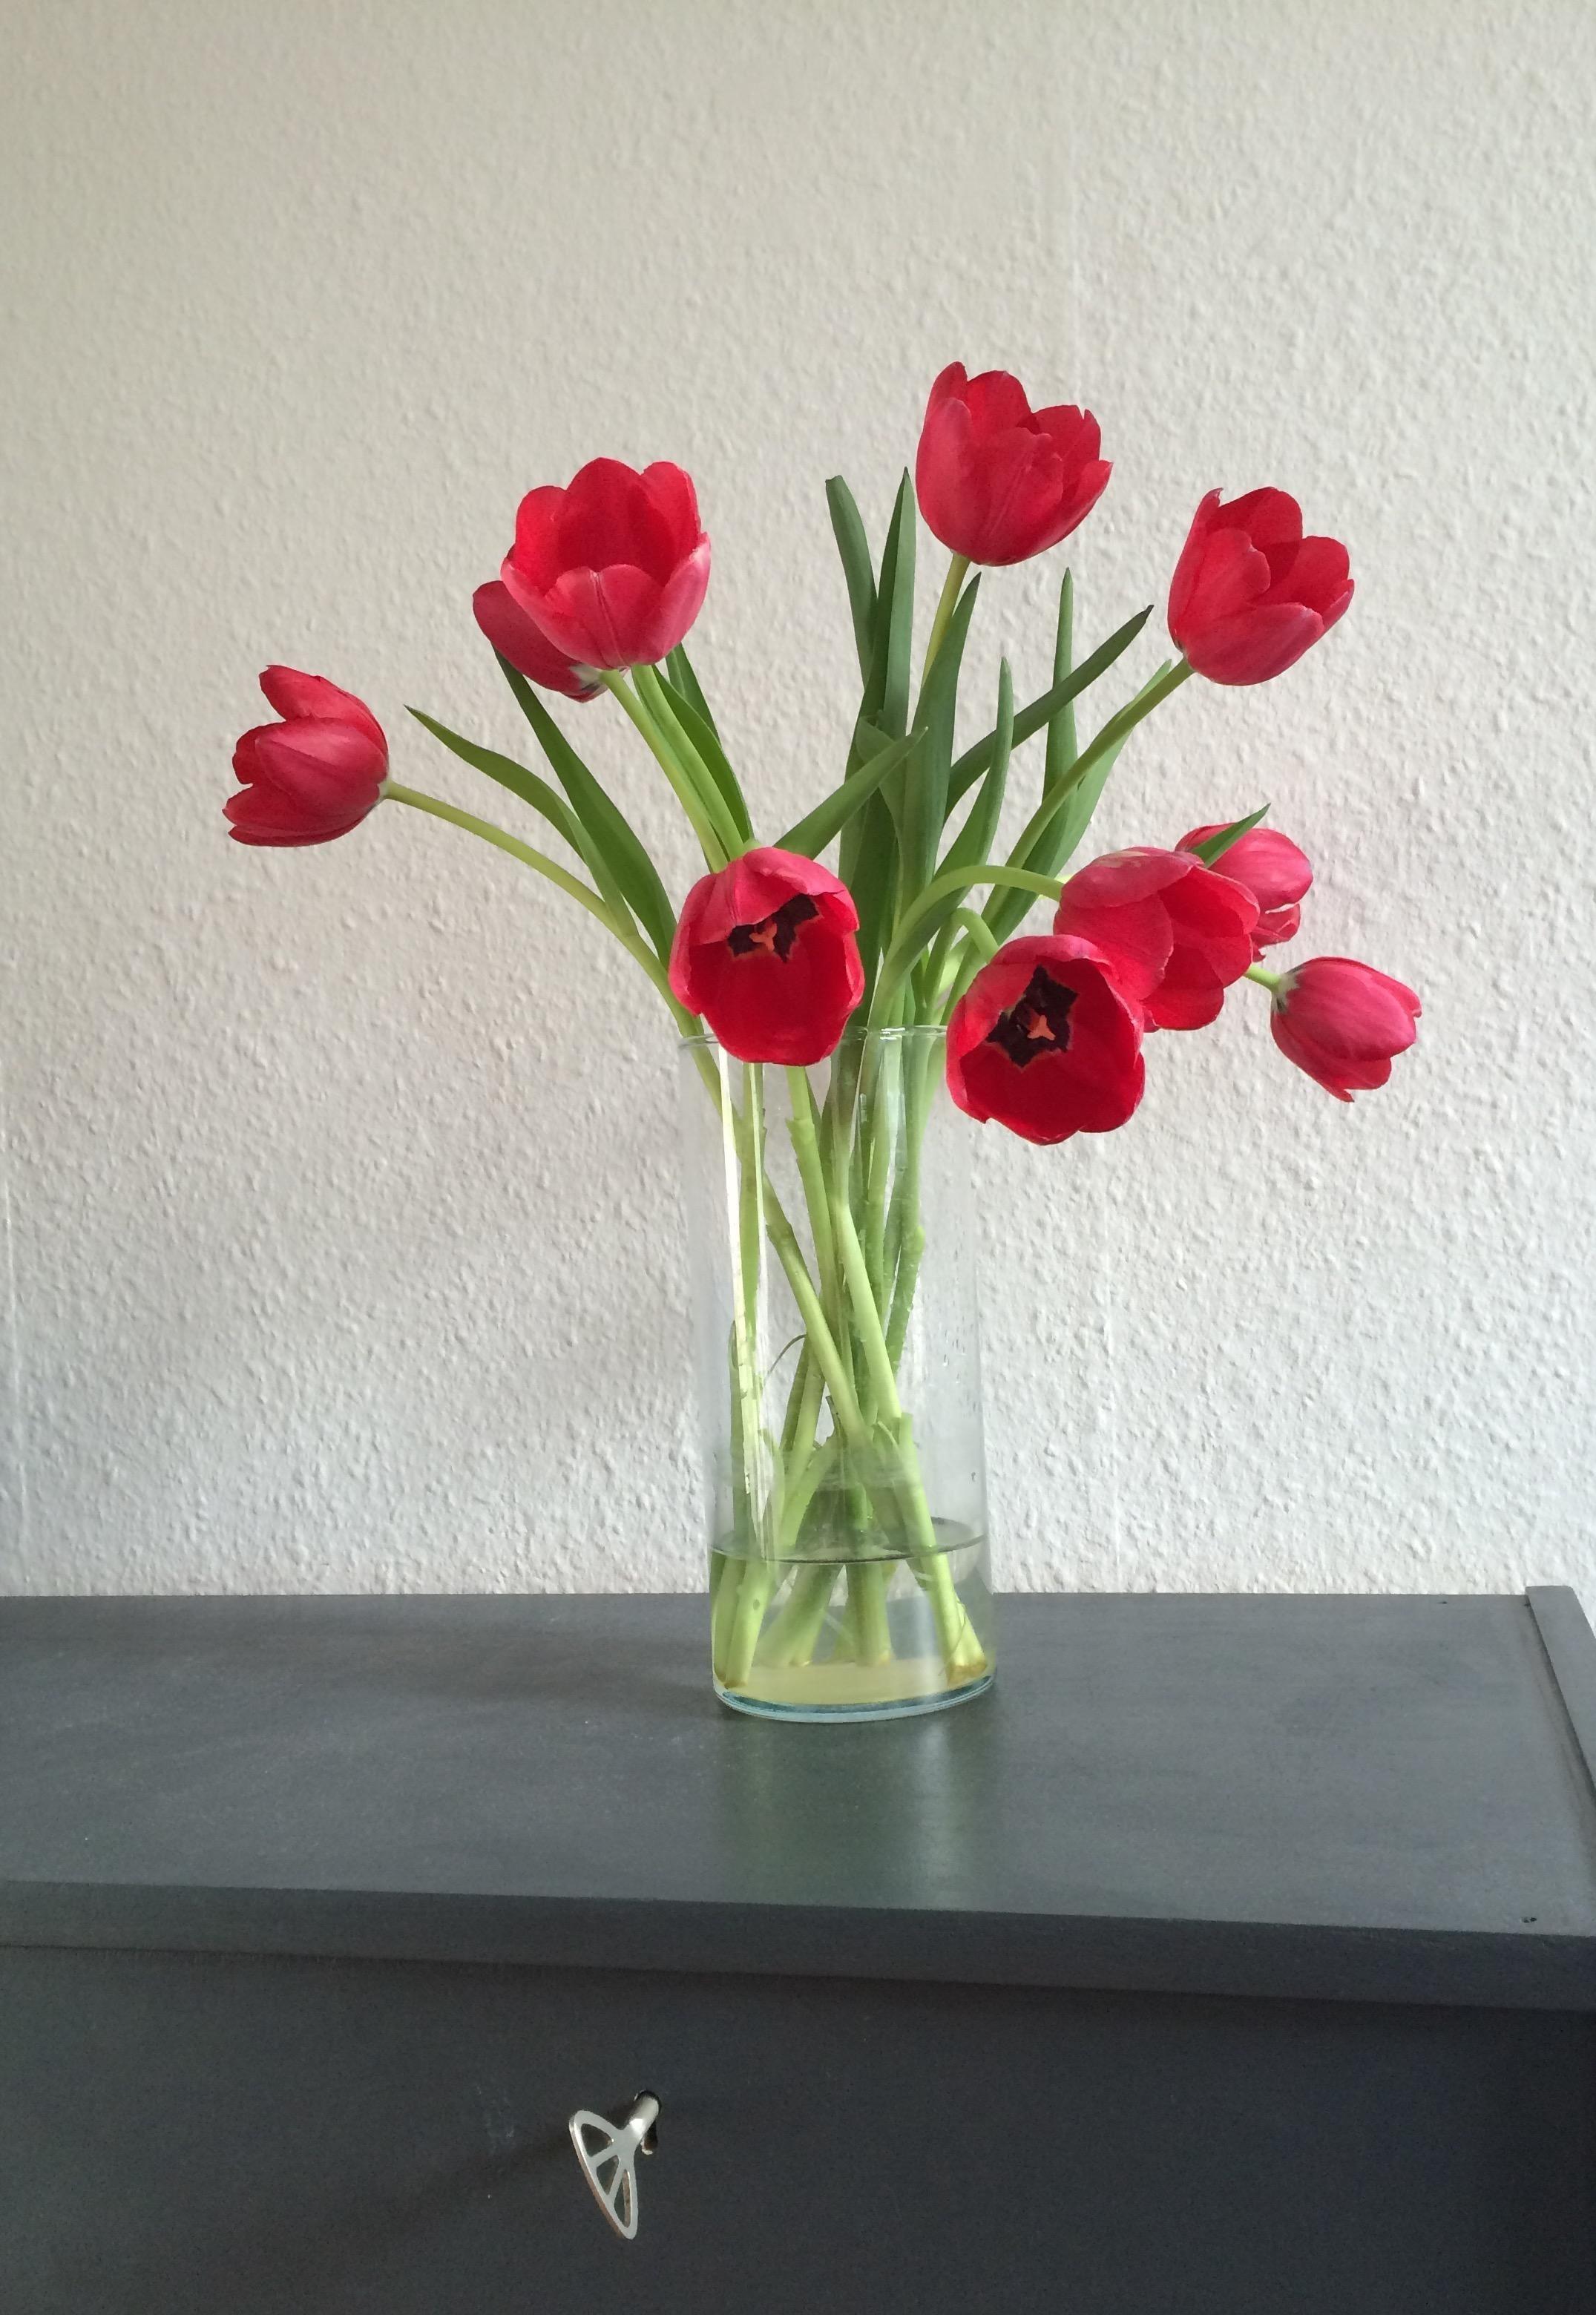 Ich liebe Tulpen einfach ❤️ #tulpen #blumen #blumenliebe #frühling